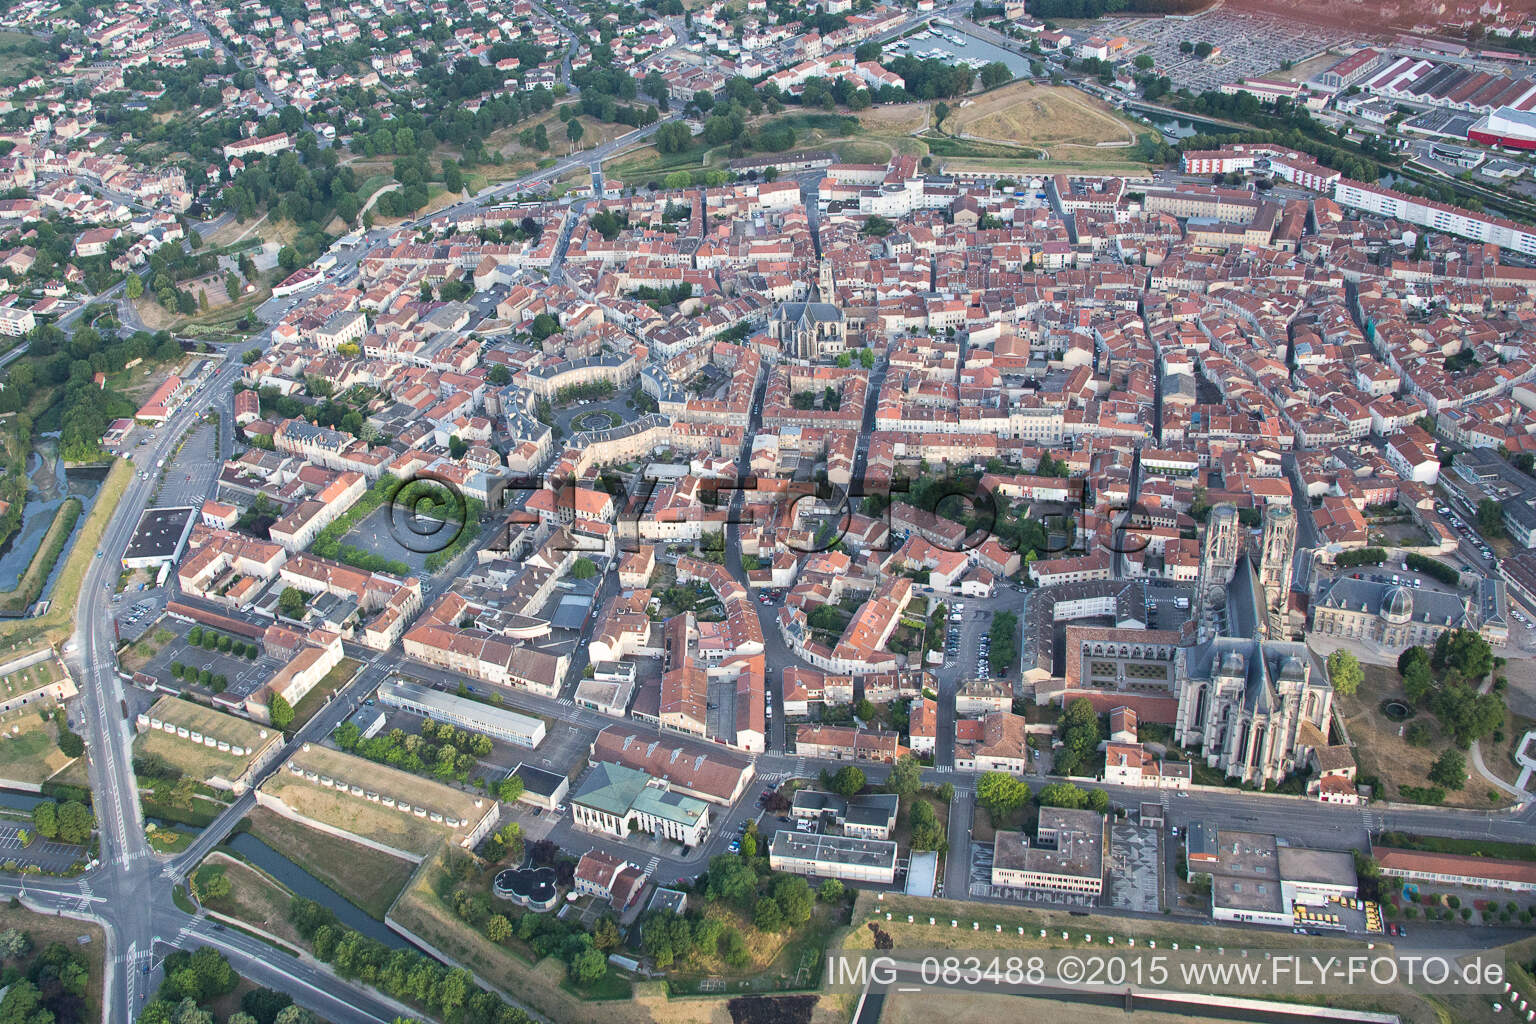 Drohnenbild von Toul im Bundesland Meurthe-et-Moselle, Frankreich